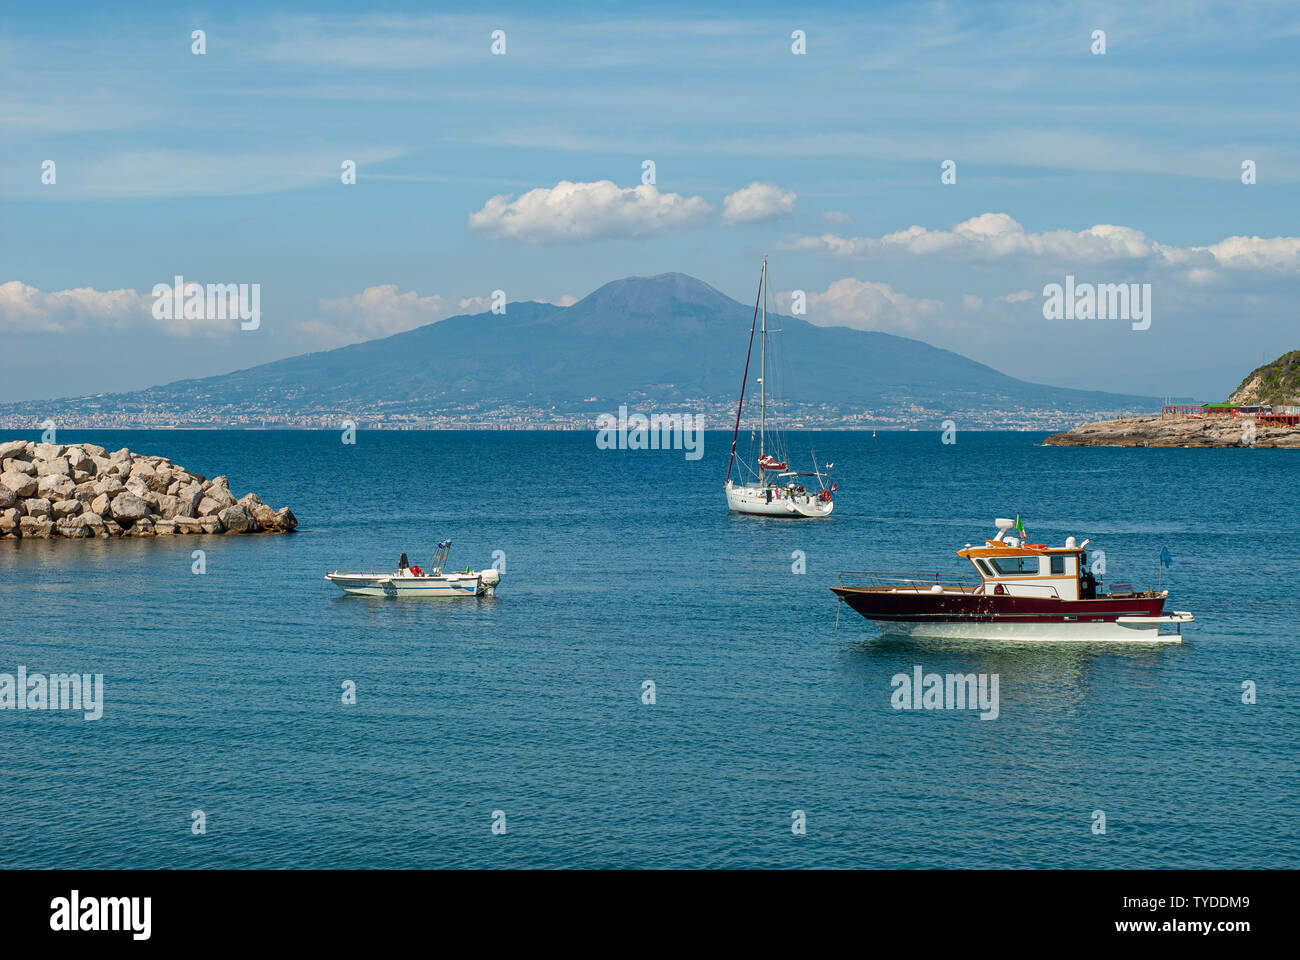 Landschaft, den Vesuv, von Himmel, Meer und Boot gerahmt, vom Jachthafen von Puolo in der Nähe von Sorrento genommen Stockfoto